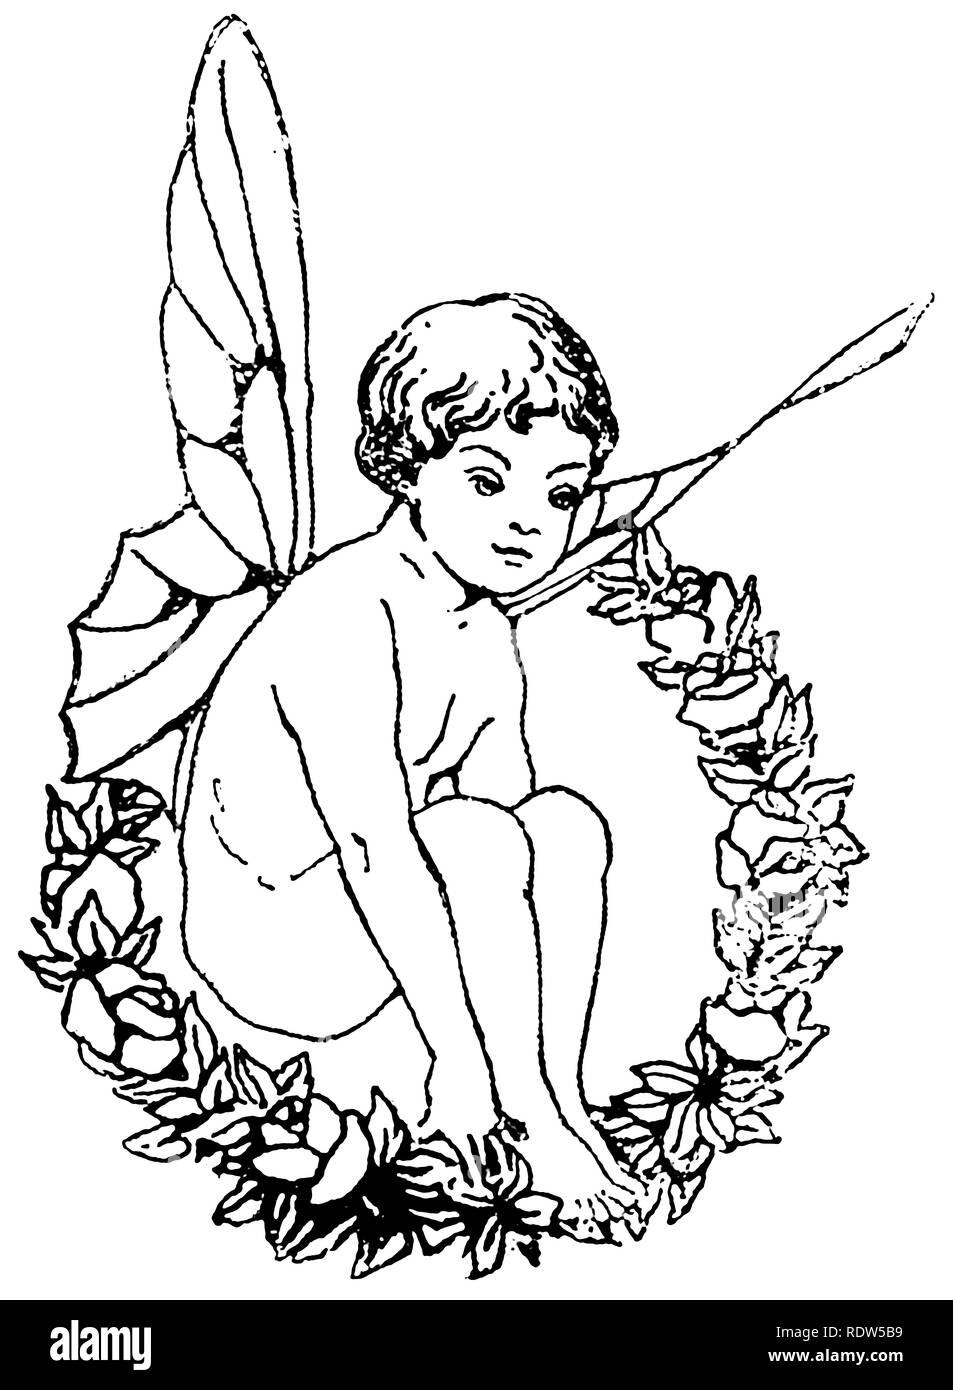 Incisione di un disegno di una fata alata seduta in corona di foglie e fiori, probabilmente un ragazzo. Foto Stock